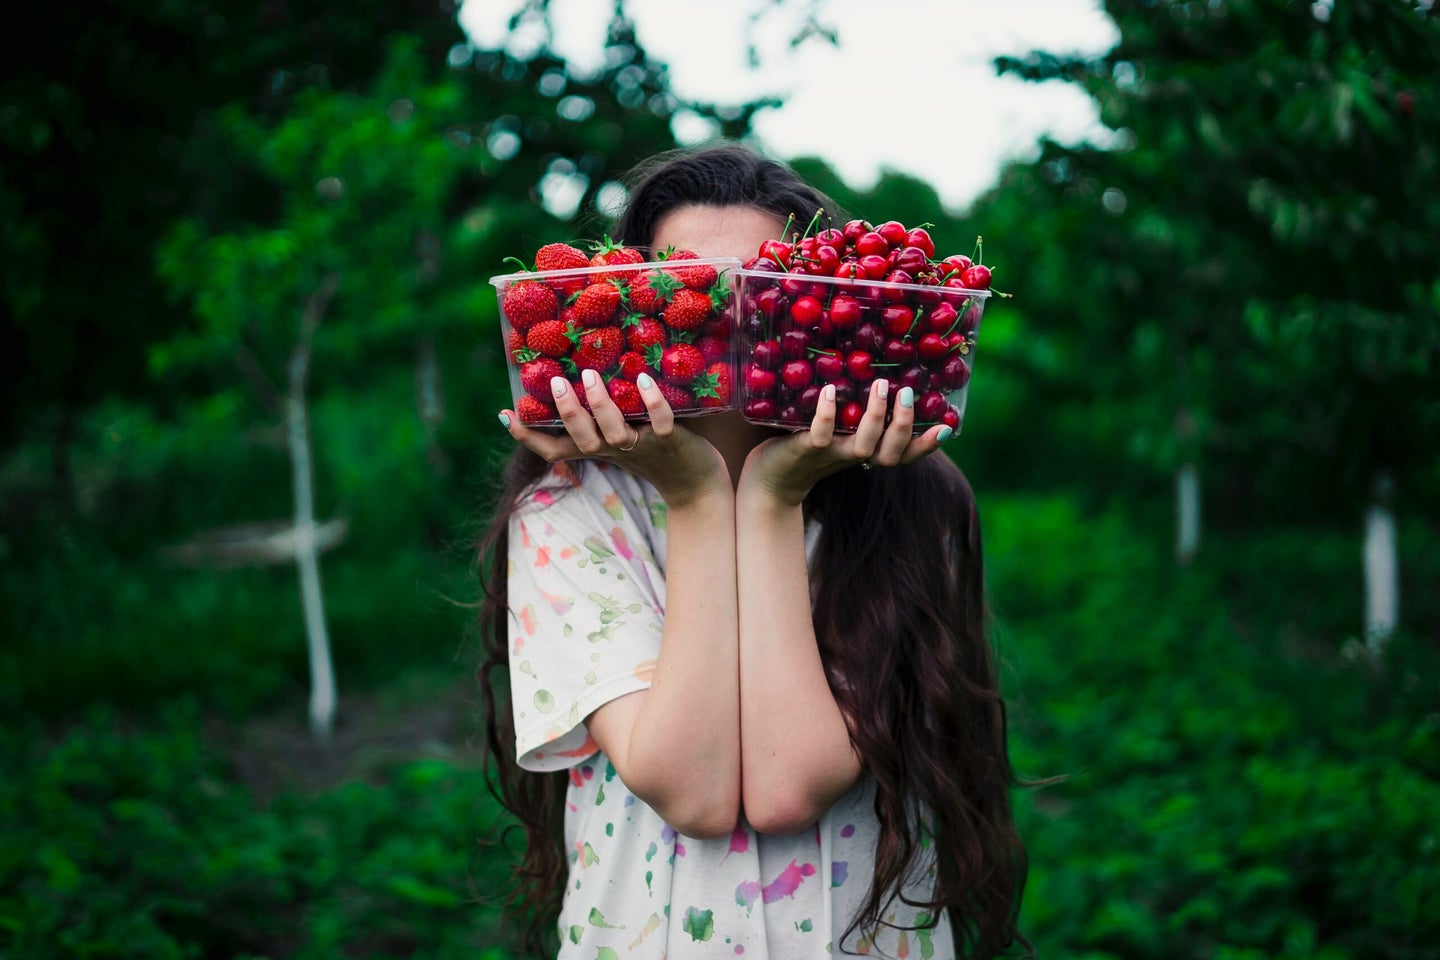 cherries and strawberries